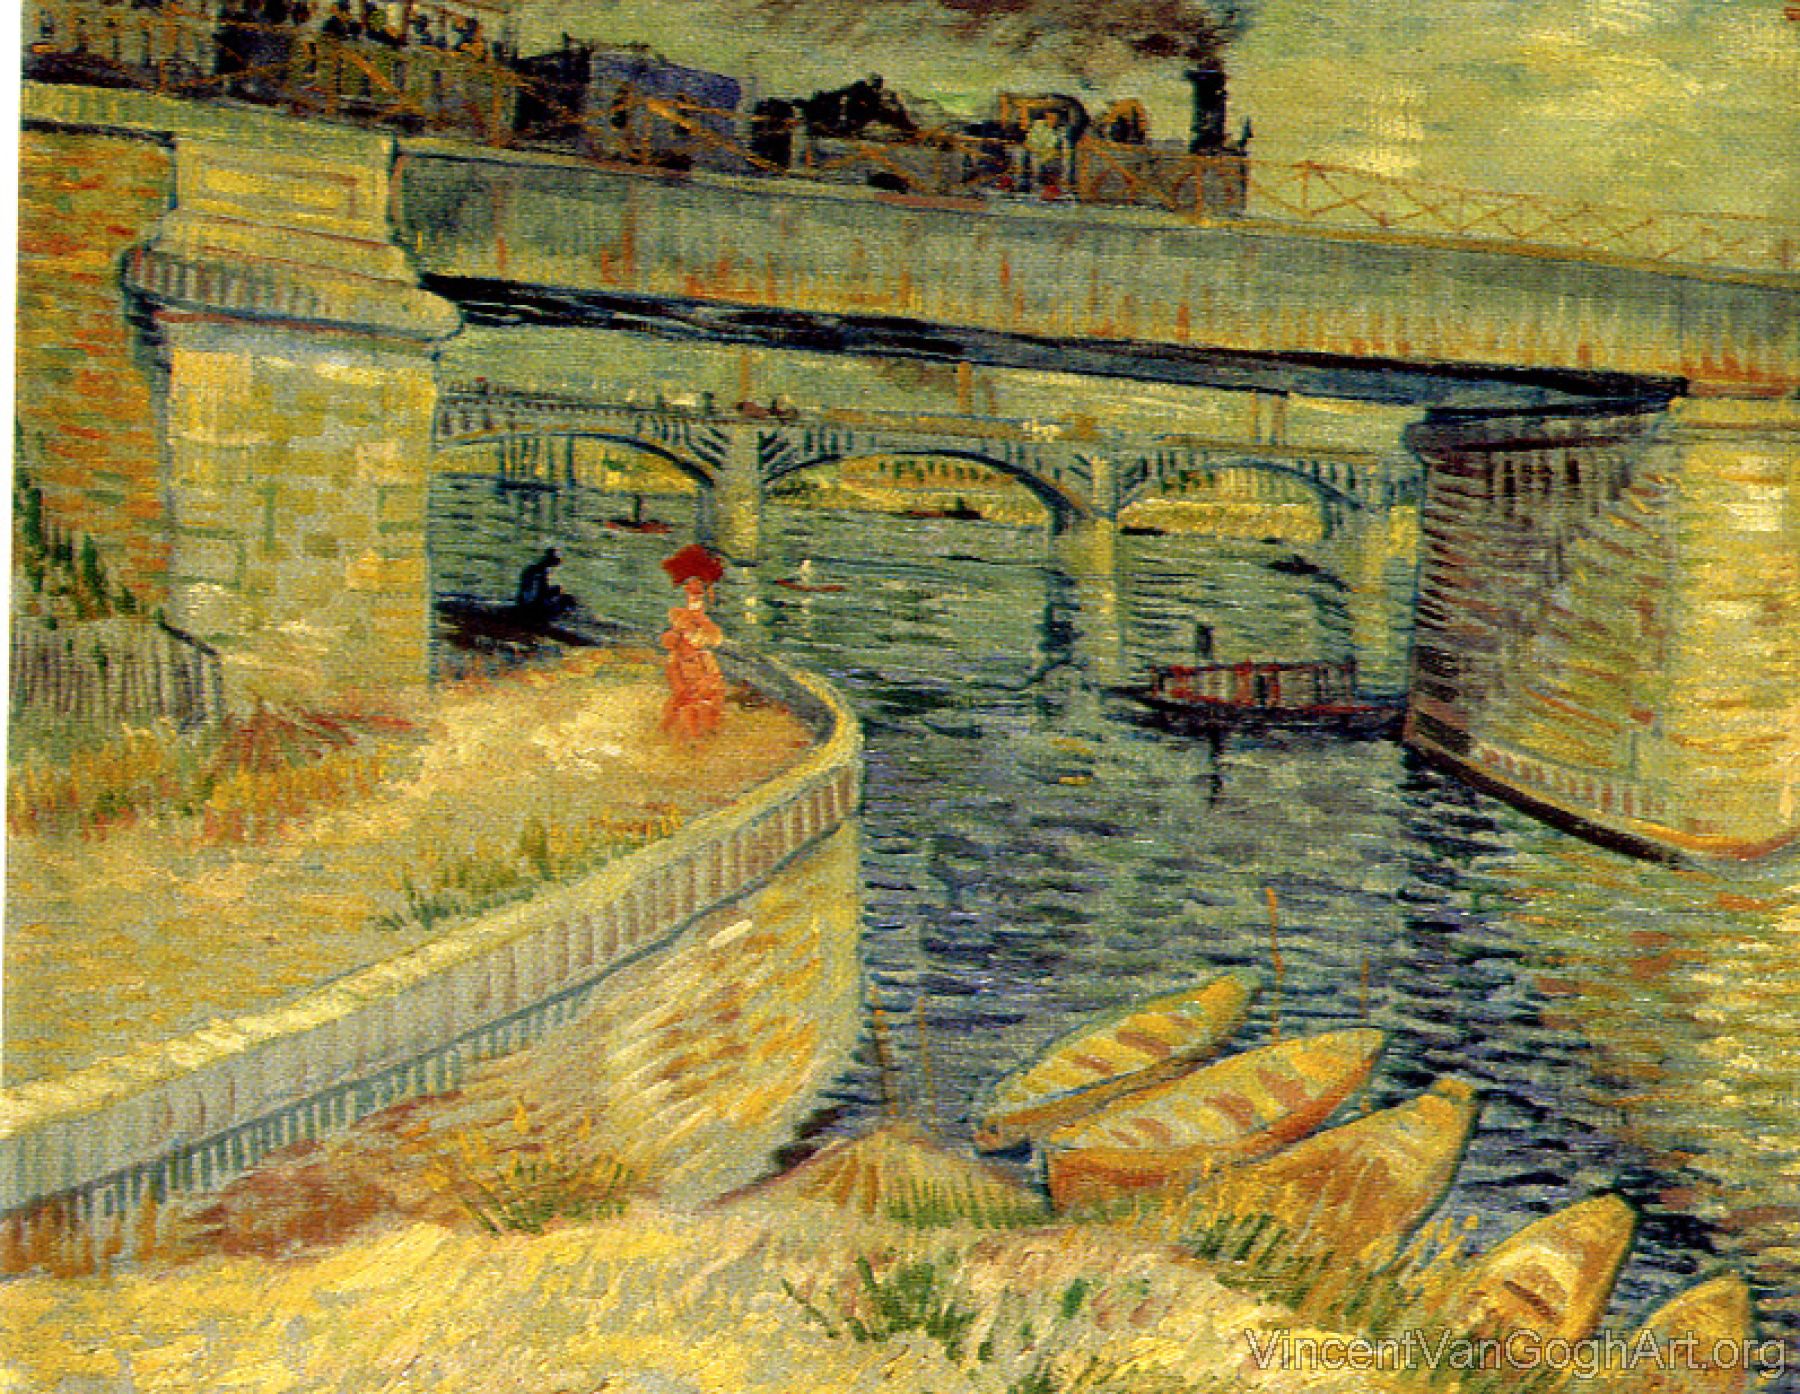 Bridges across the Seine at Asnieres